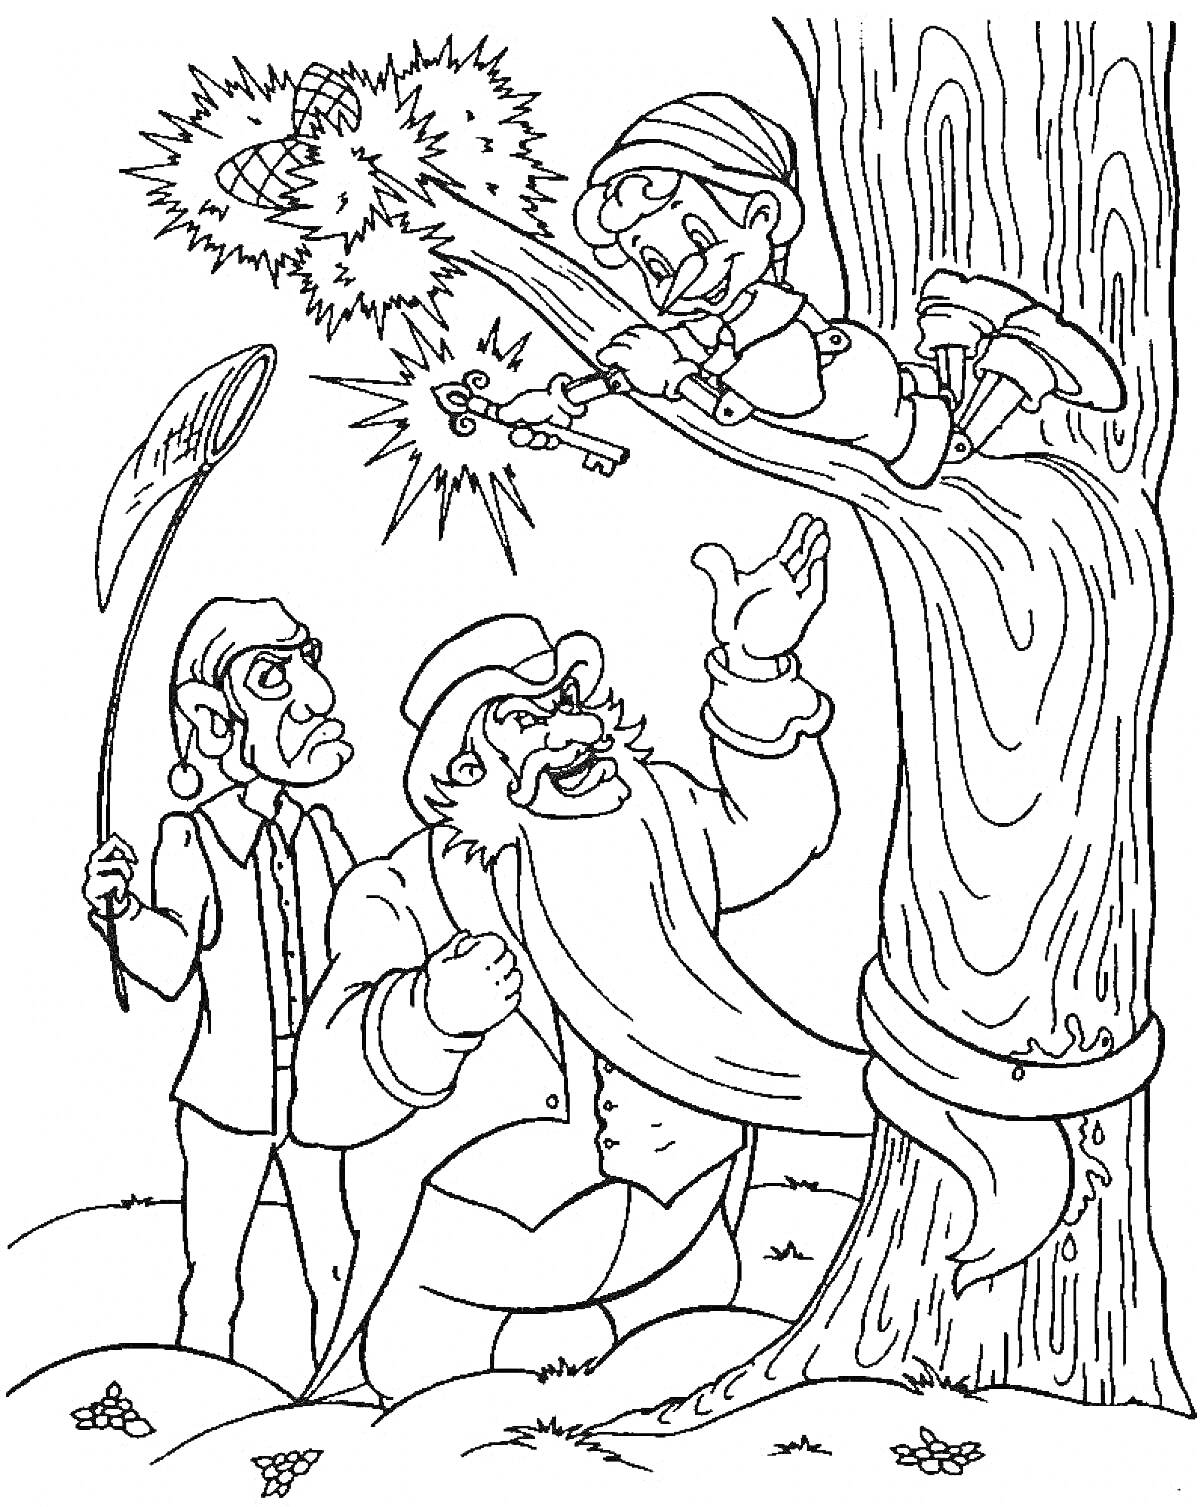 Раскраска Буратино, сидящий на дереве, злодеи пытаются достать его, используя сеть